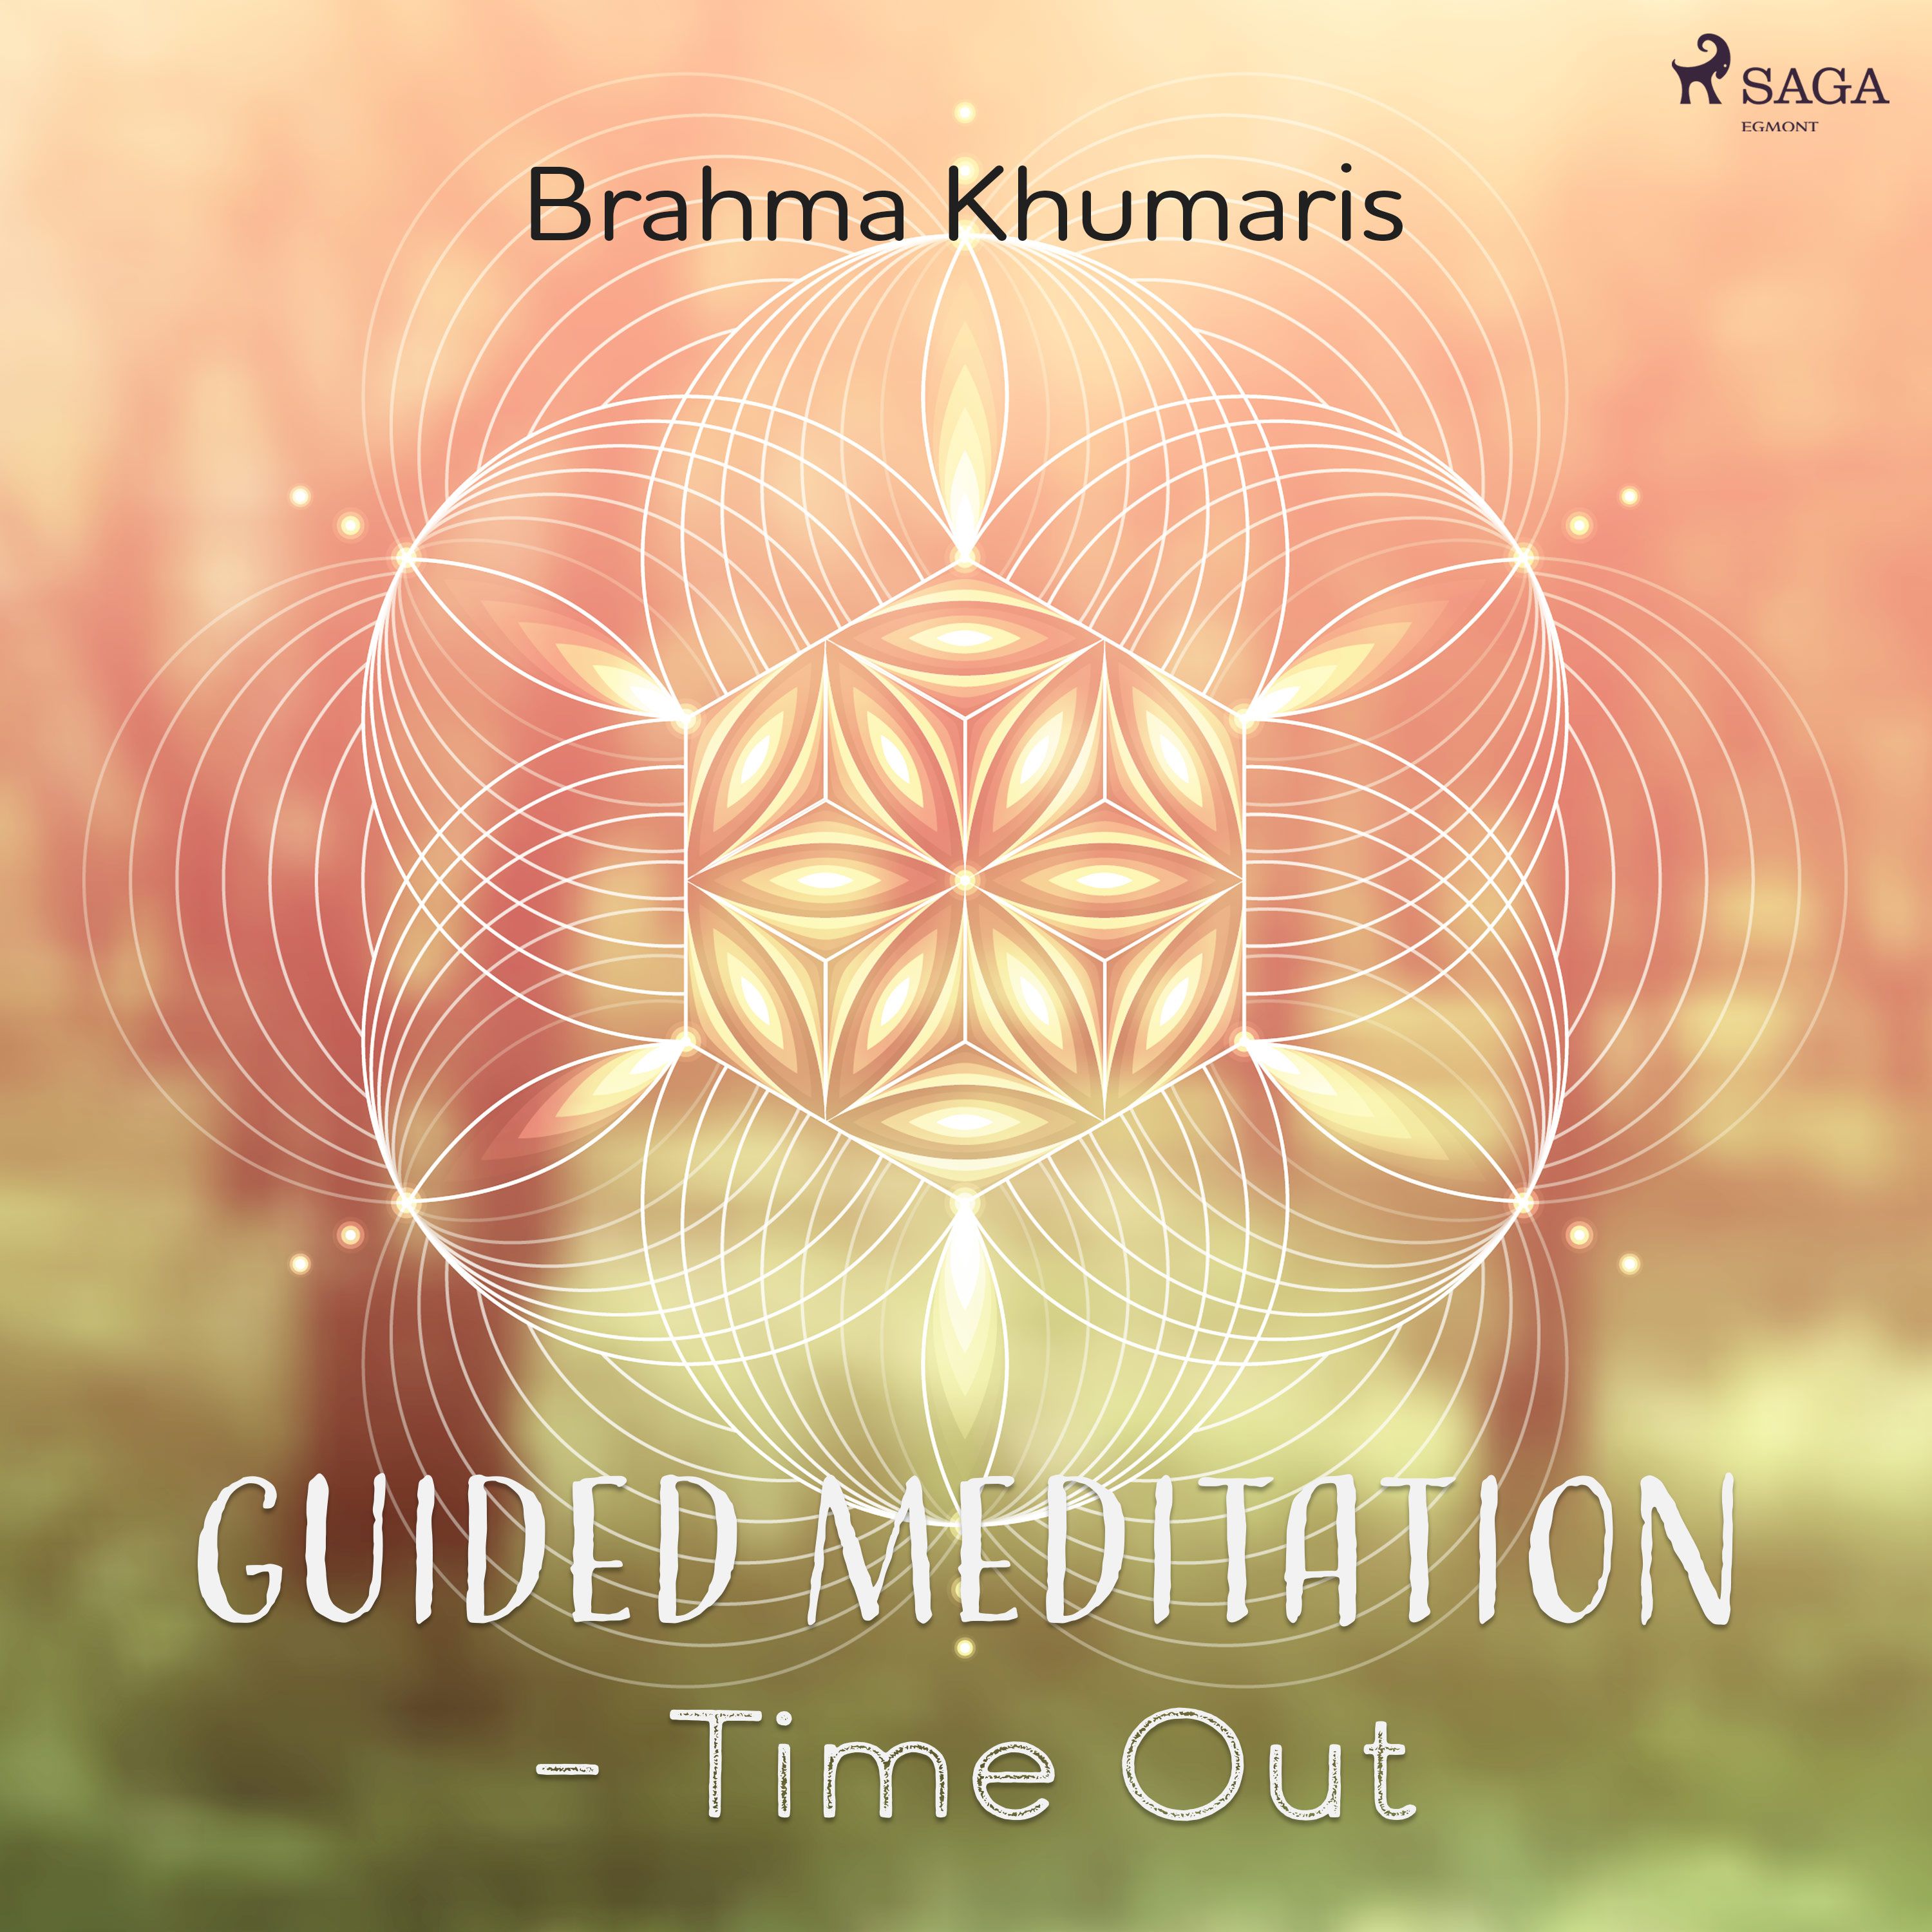 Guided Meditation – Time Out, lydbog af Brahma Khumaris